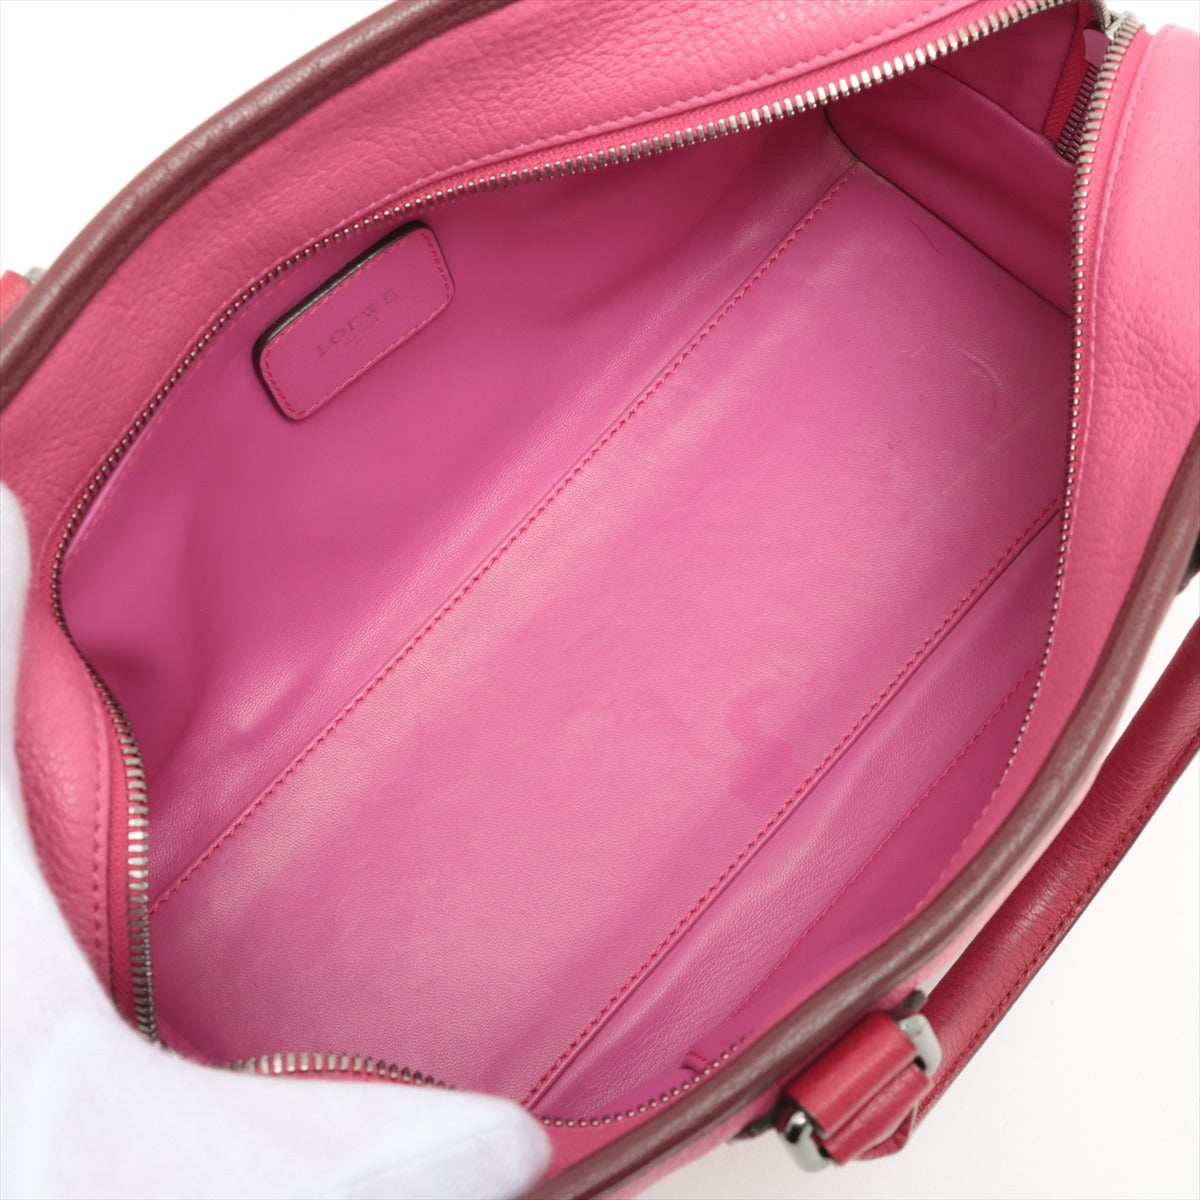 Loewe Amazona 28 Leather Hand bag Pink